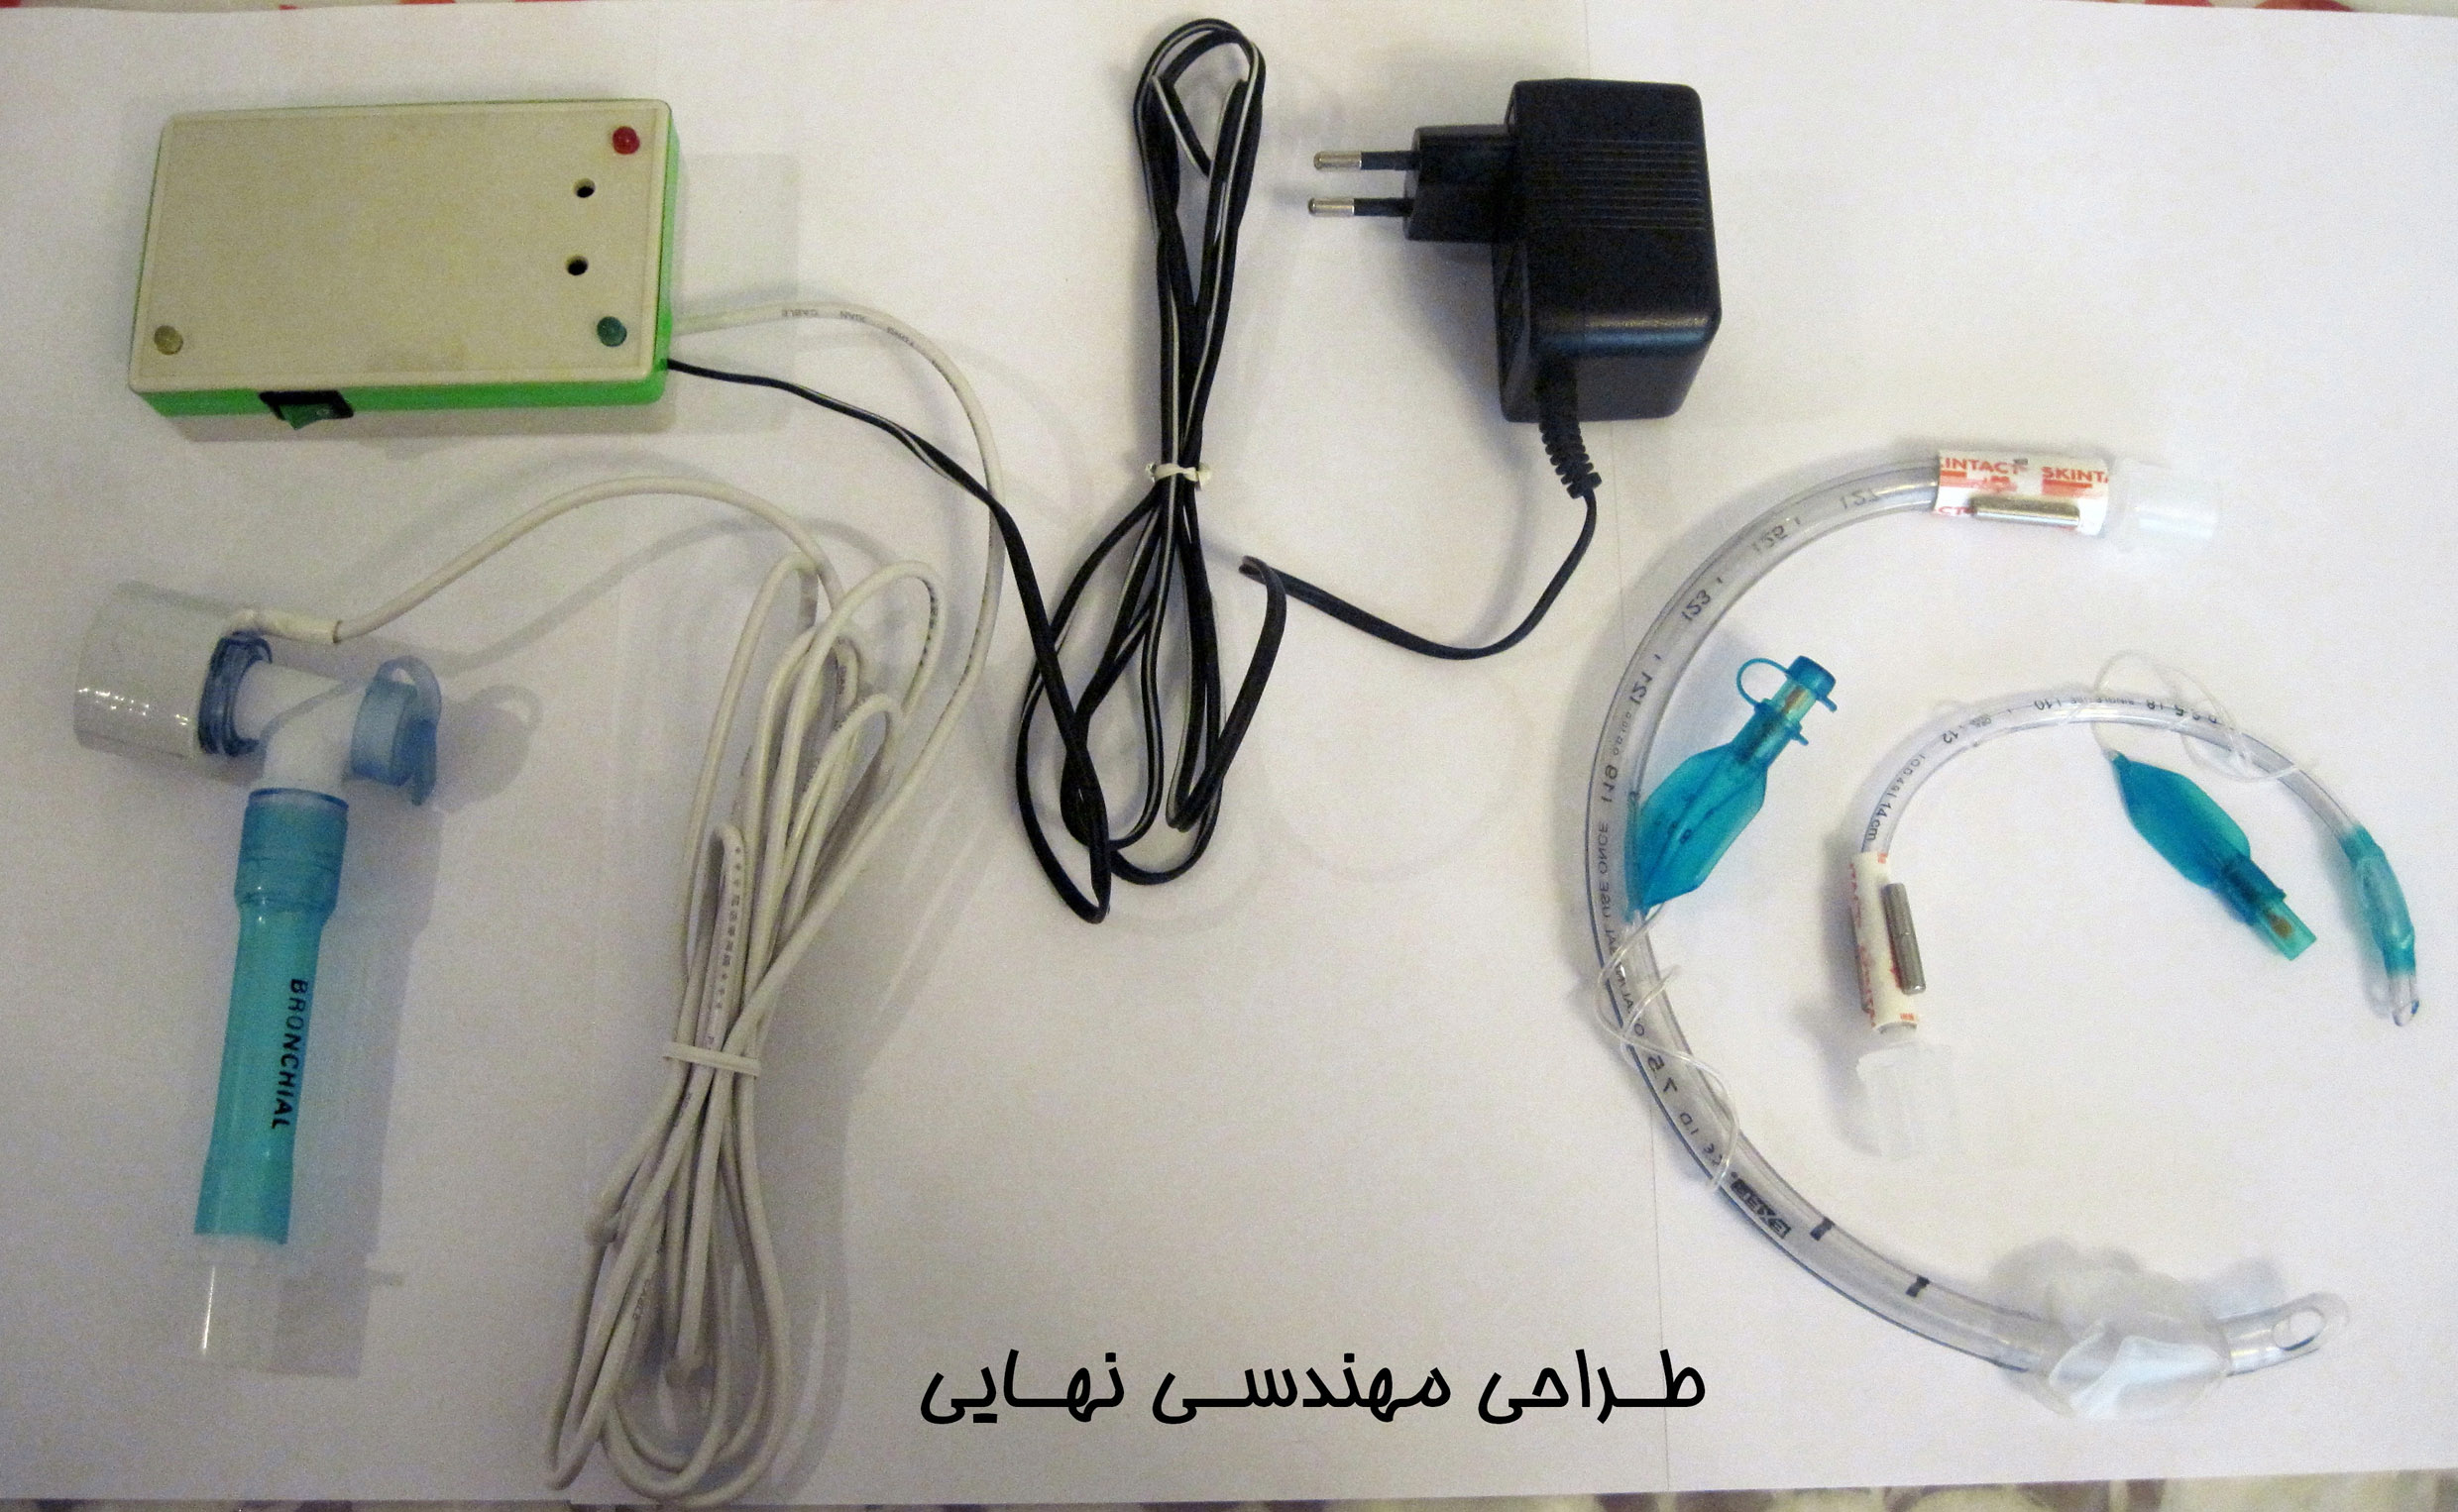 ساخت دستگاه پزشکی توسط دانشجوی فارغ التحصیل آموزشکده سما تبریز